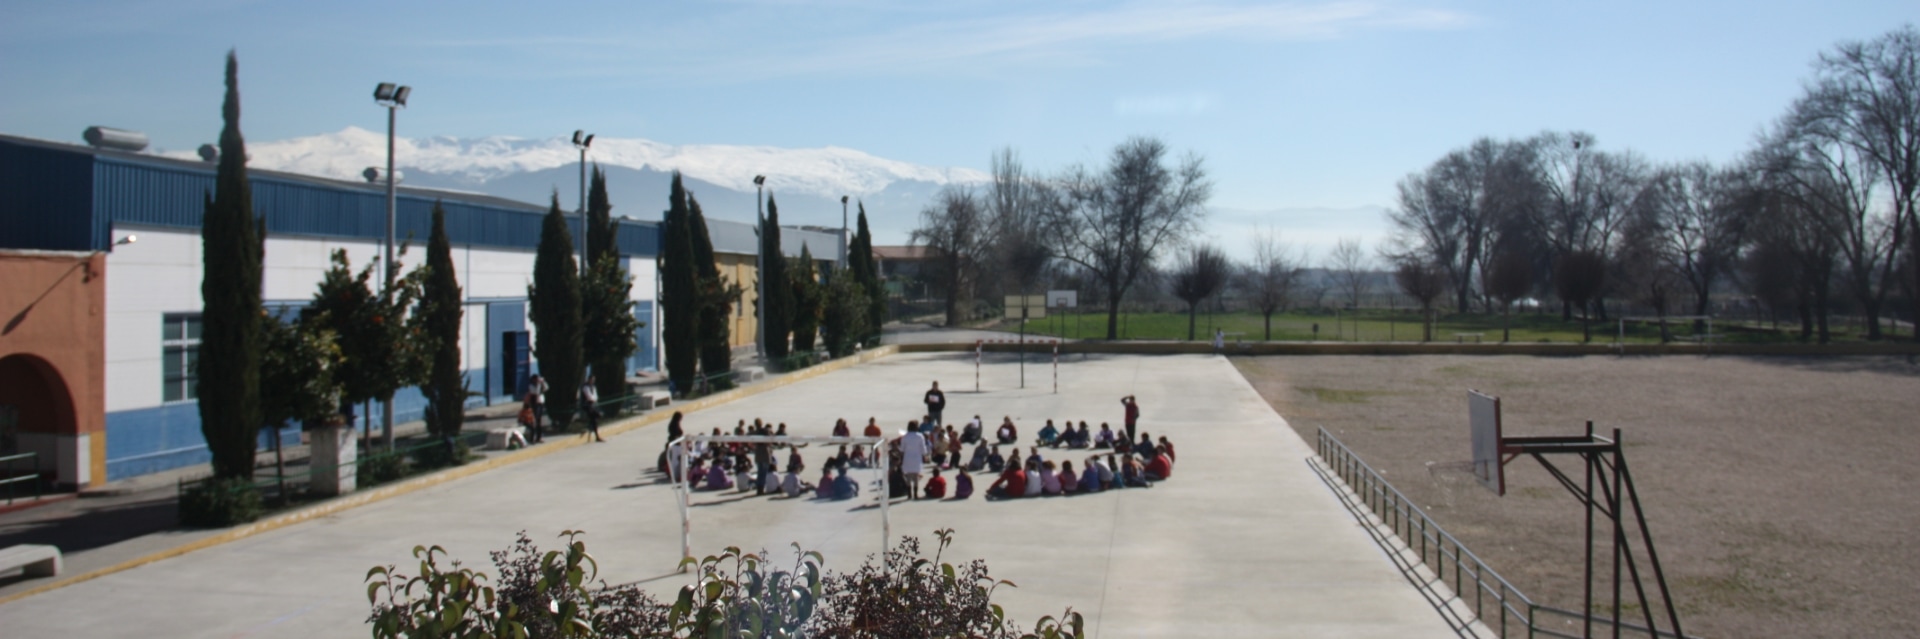 Grupo de niños sentados en círculo en el patio